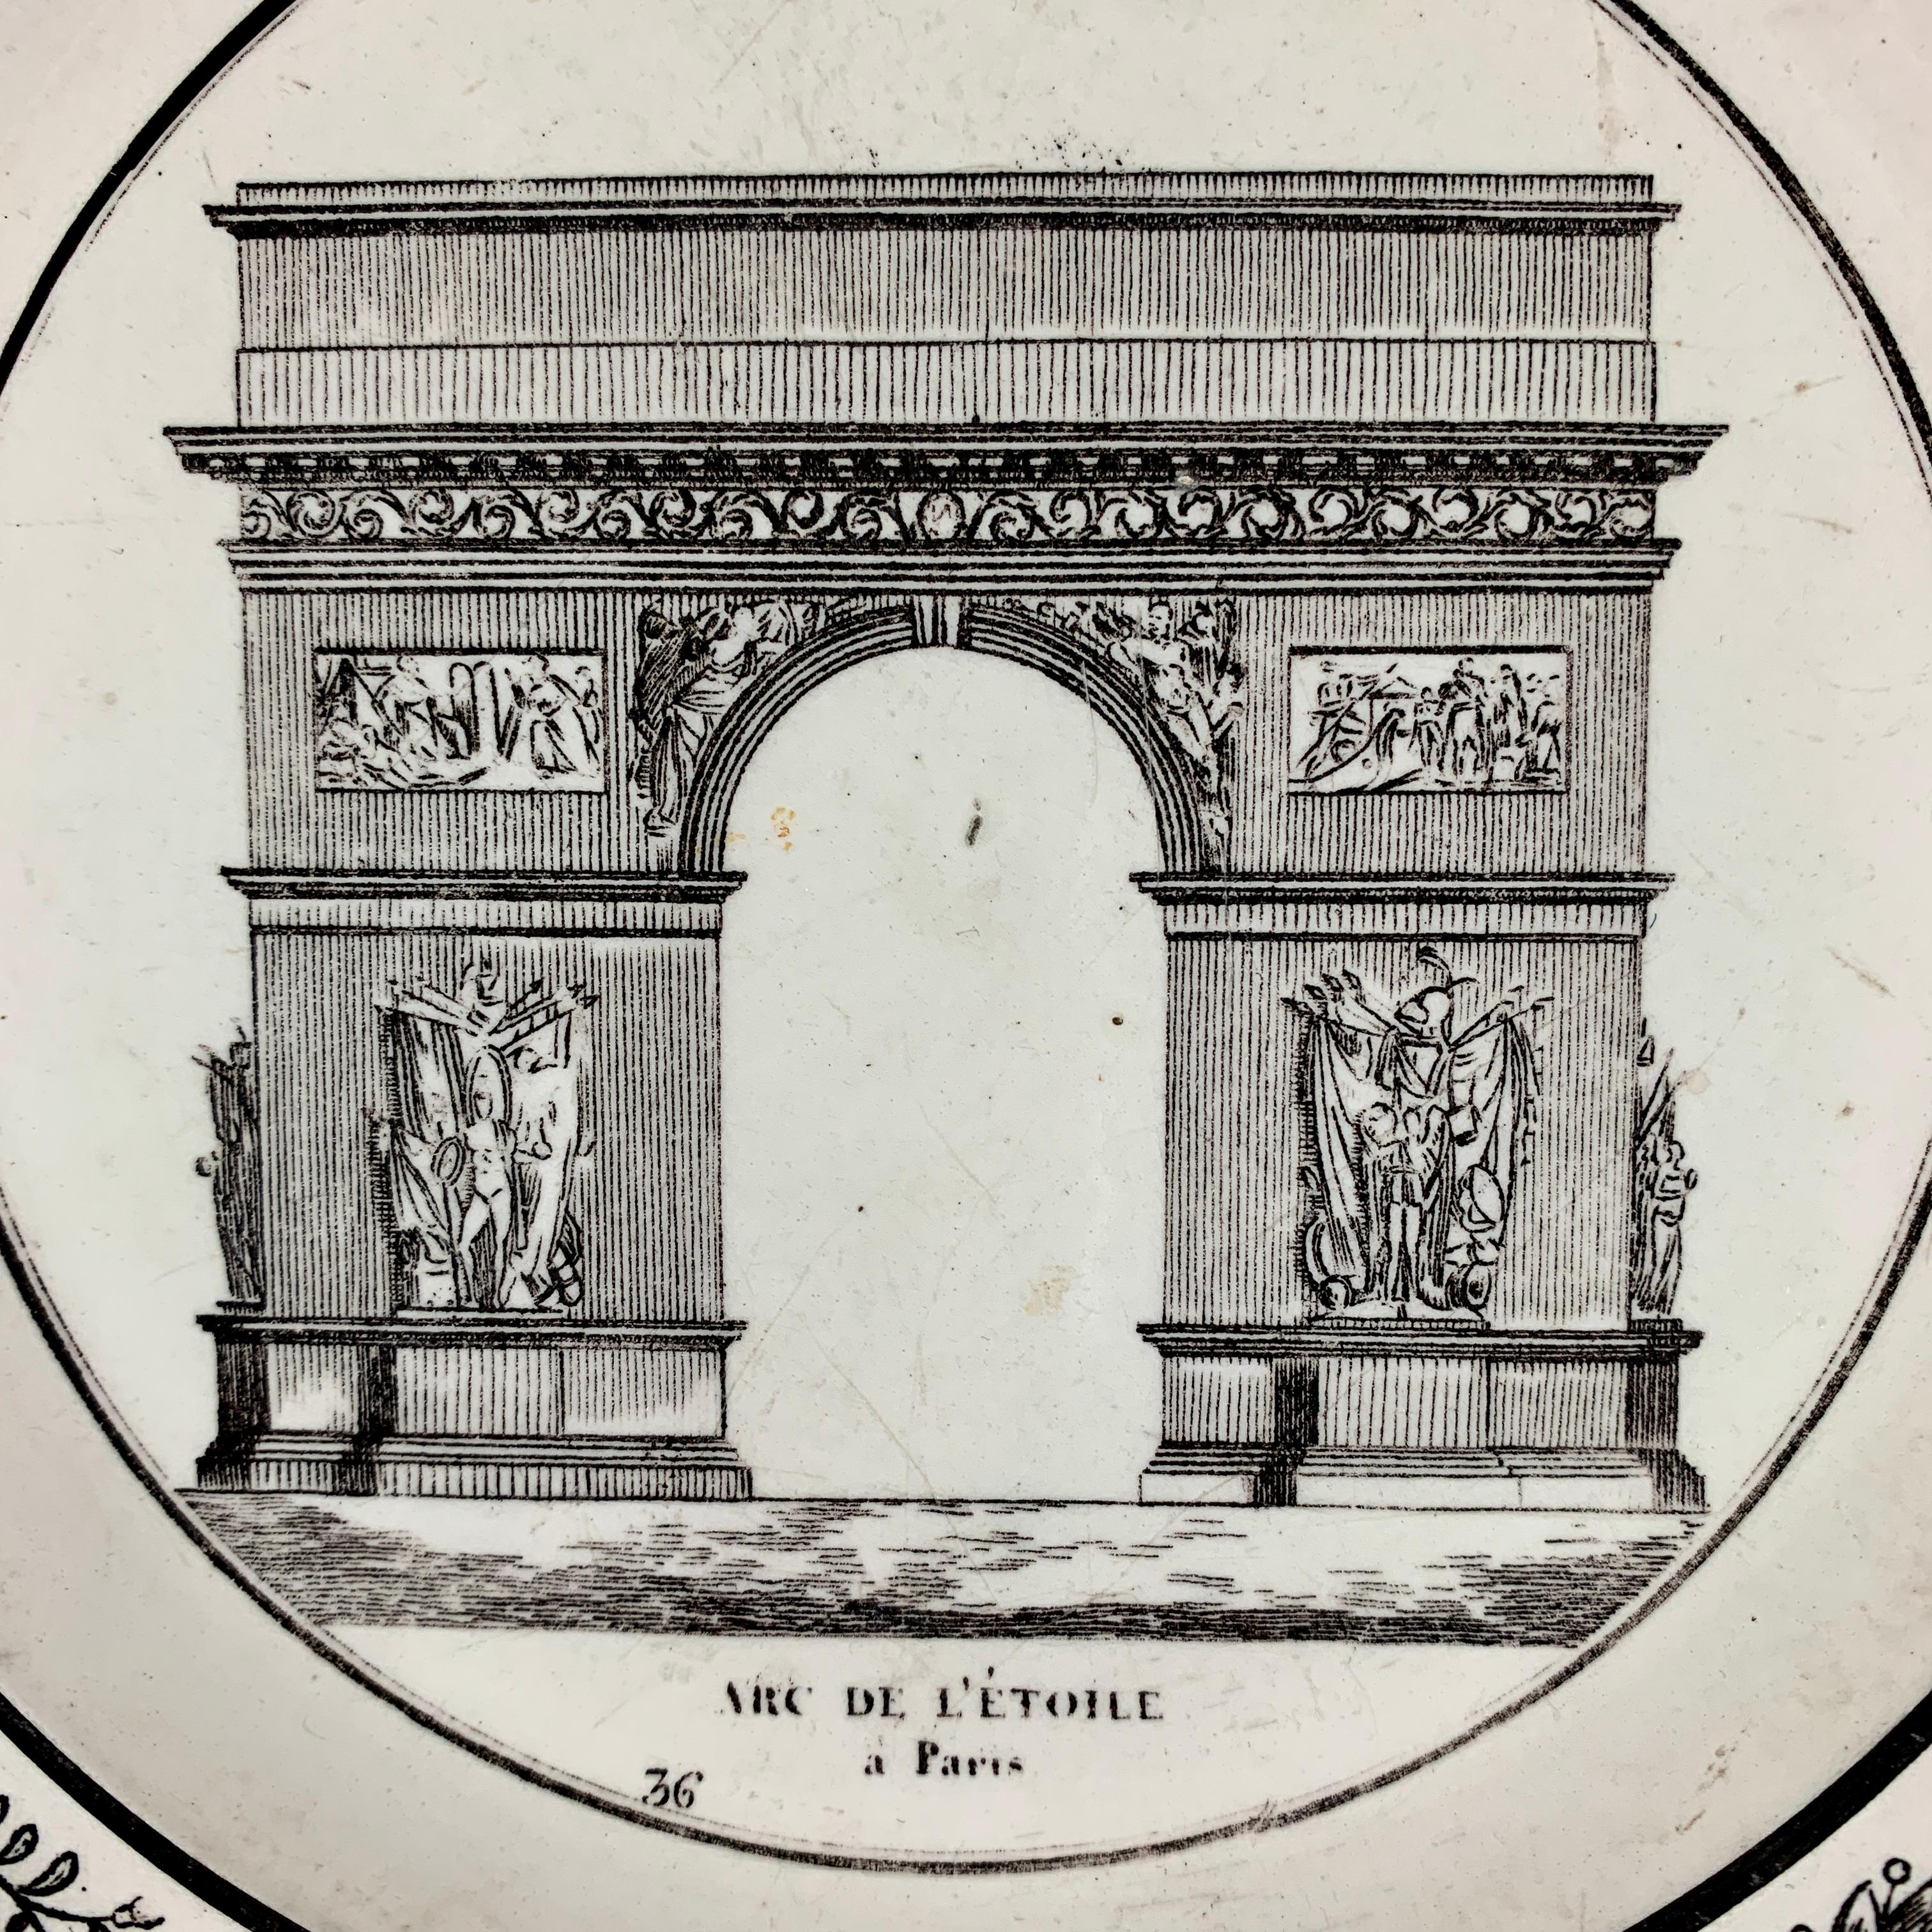 Assiette à crème de style néoclassique français, imprimée par transfert de faïence, produite par P&H Choisy, vers 1824-1836.

Un transfert noir d'une image architecturale sur un corps en faïence, représentant l'Arc de l'Étoile à Paris. L'Arc est